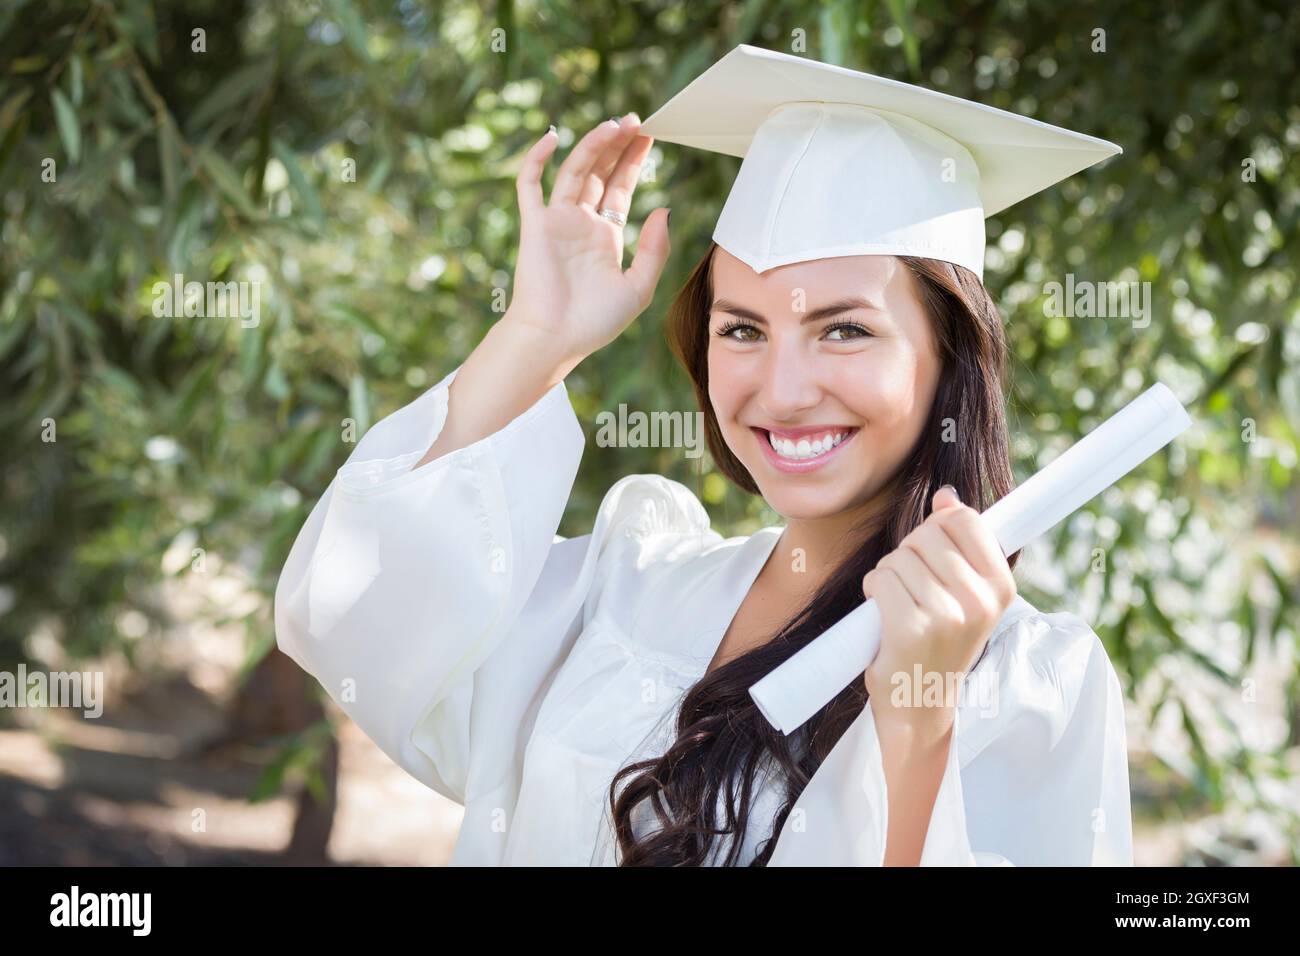 Atractiva Chica De Raza Mixta Celebra La Graduación Fuera De Toga Y Birrete Con Diploma En Mano 0599